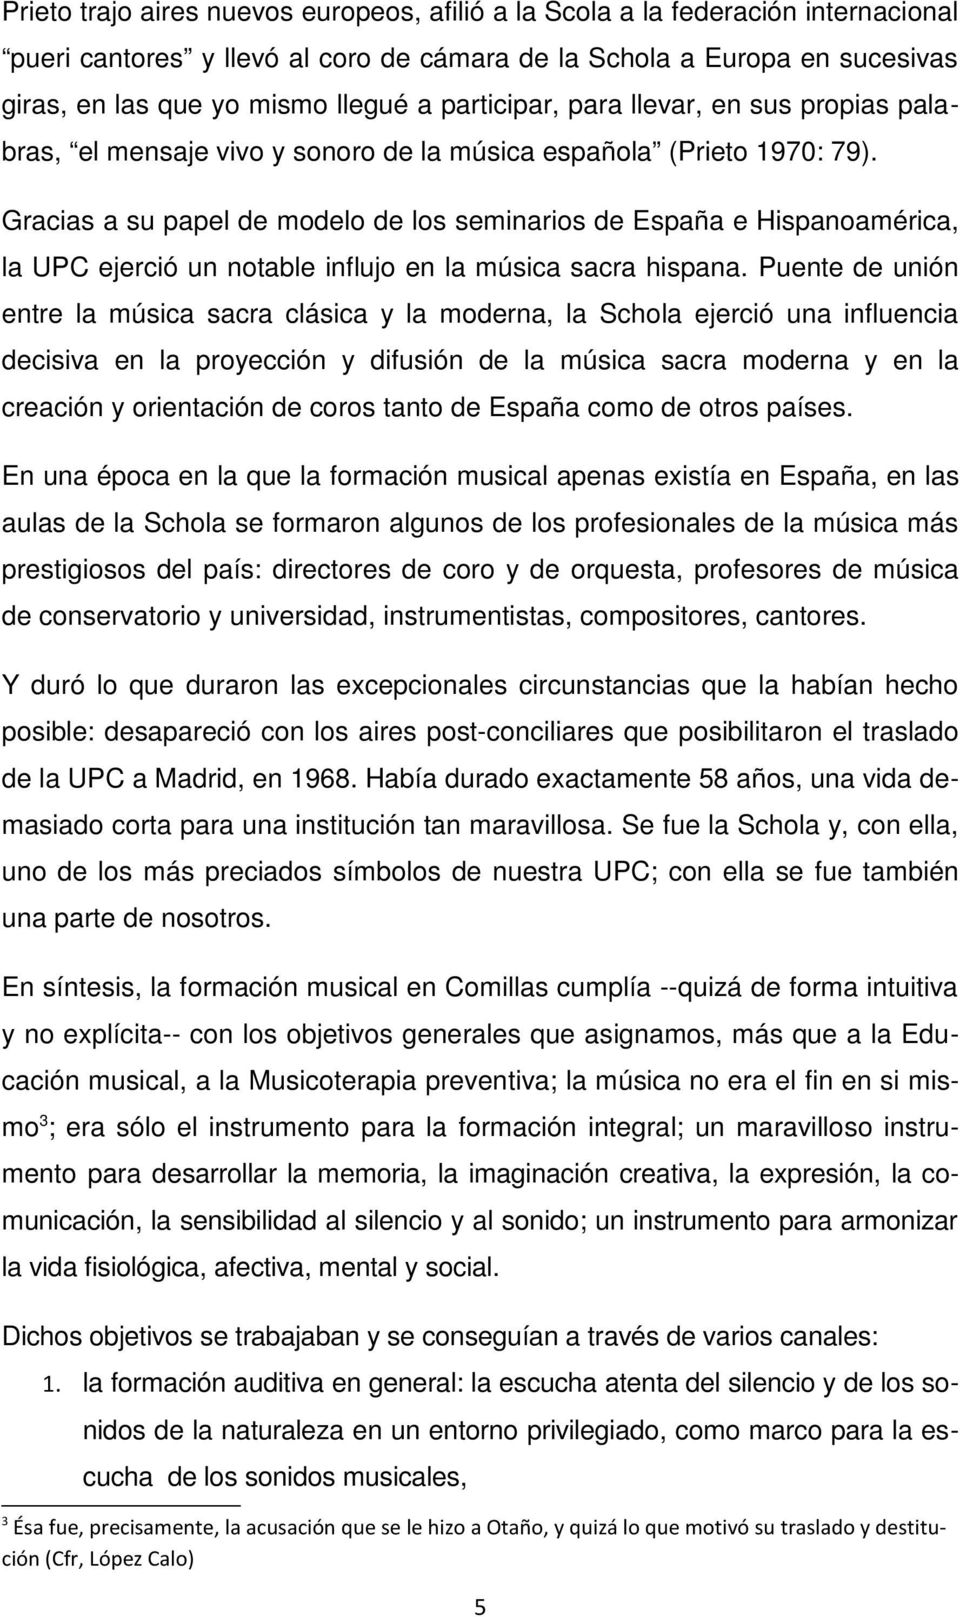 Gracias a su papel de modelo de los seminarios de España e Hispanoamérica, la UPC ejerció un notable influjo en la música sacra hispana.